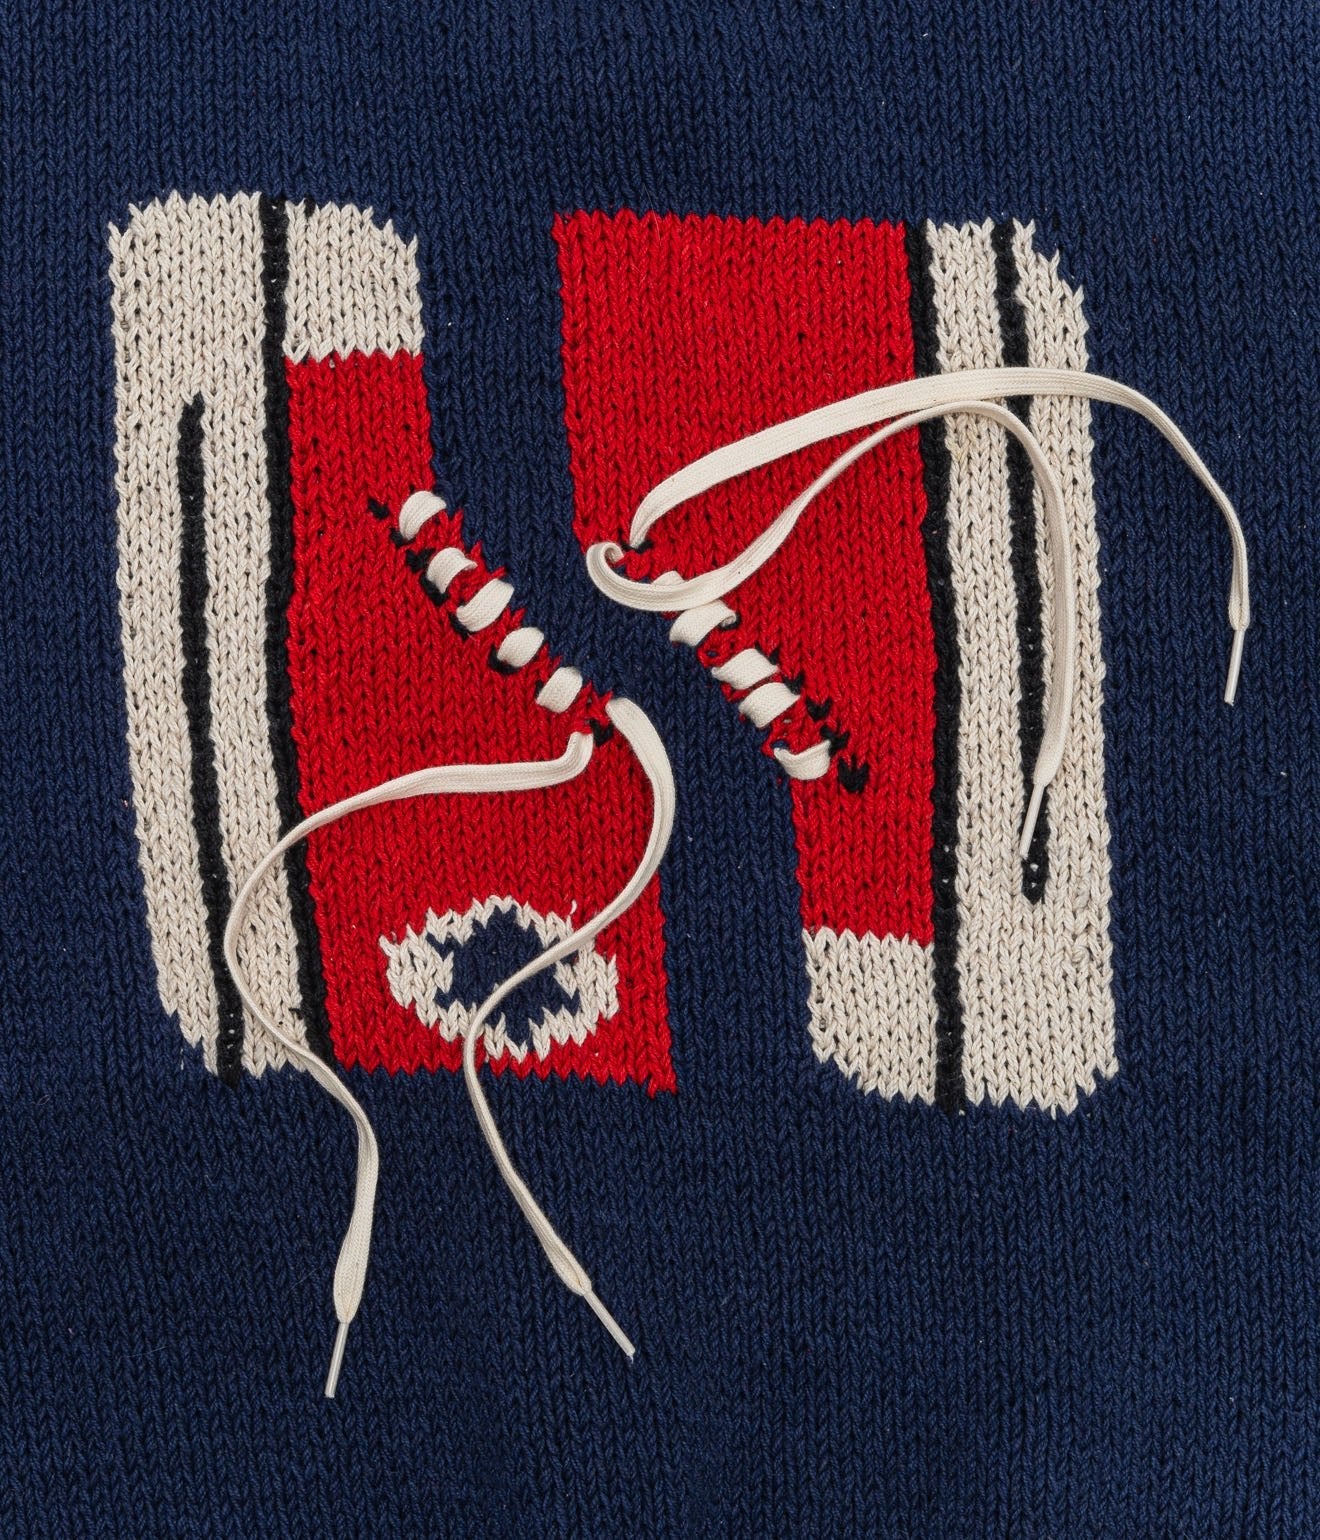 MacMahon Knitting Mills+niche. "Crew Neck Vest - Sneaker" Navy / Red - WEAREALLANIMALS